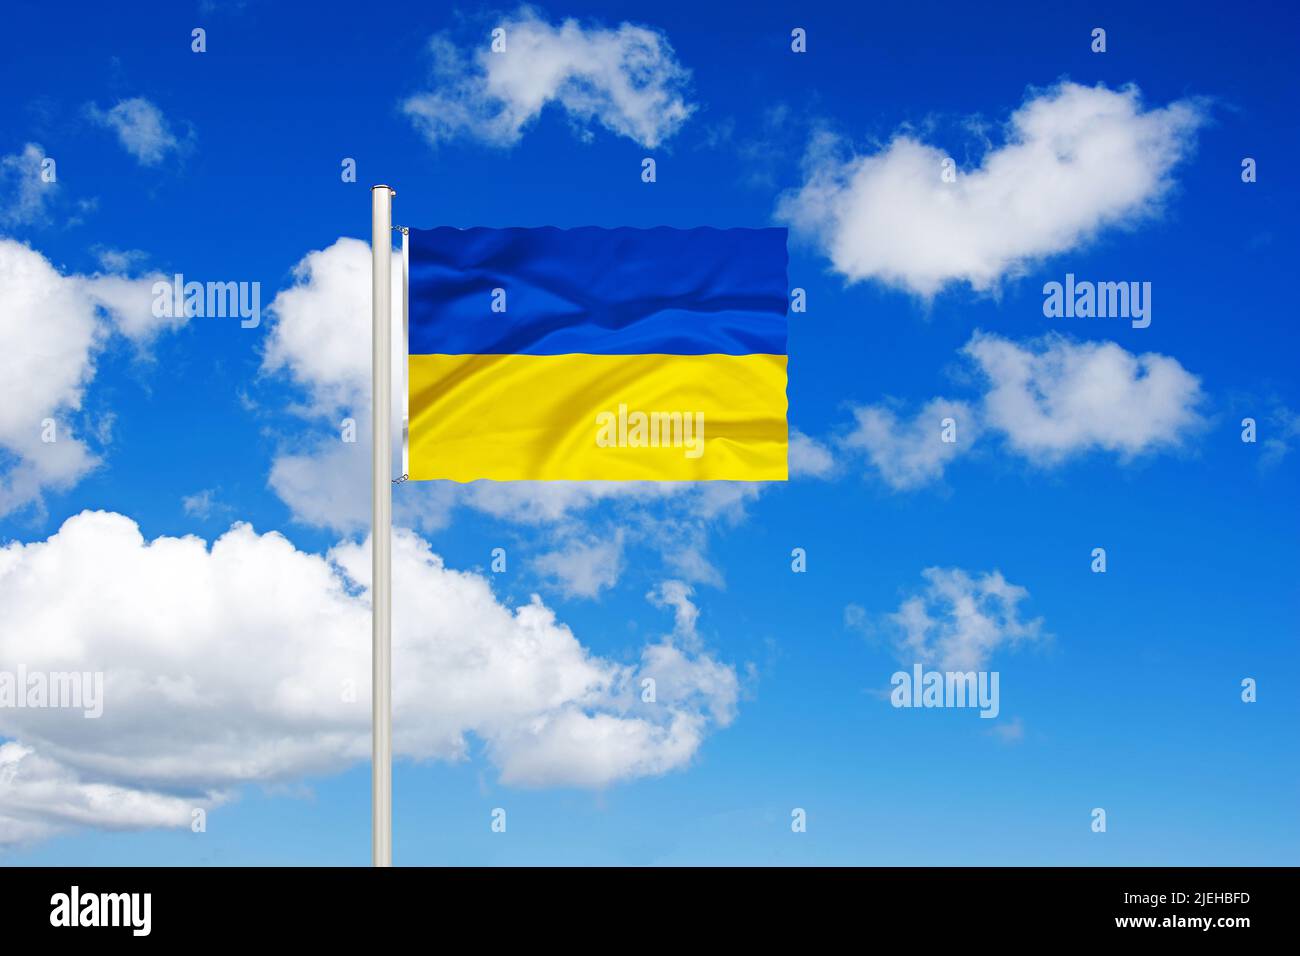 Ukraine, Osteuropa, Nationalfahne, Nationalflagge, Fahne, Flagge, Flaggenmast, Cumulus Wolken vor blauen Himmel, Stock Photo